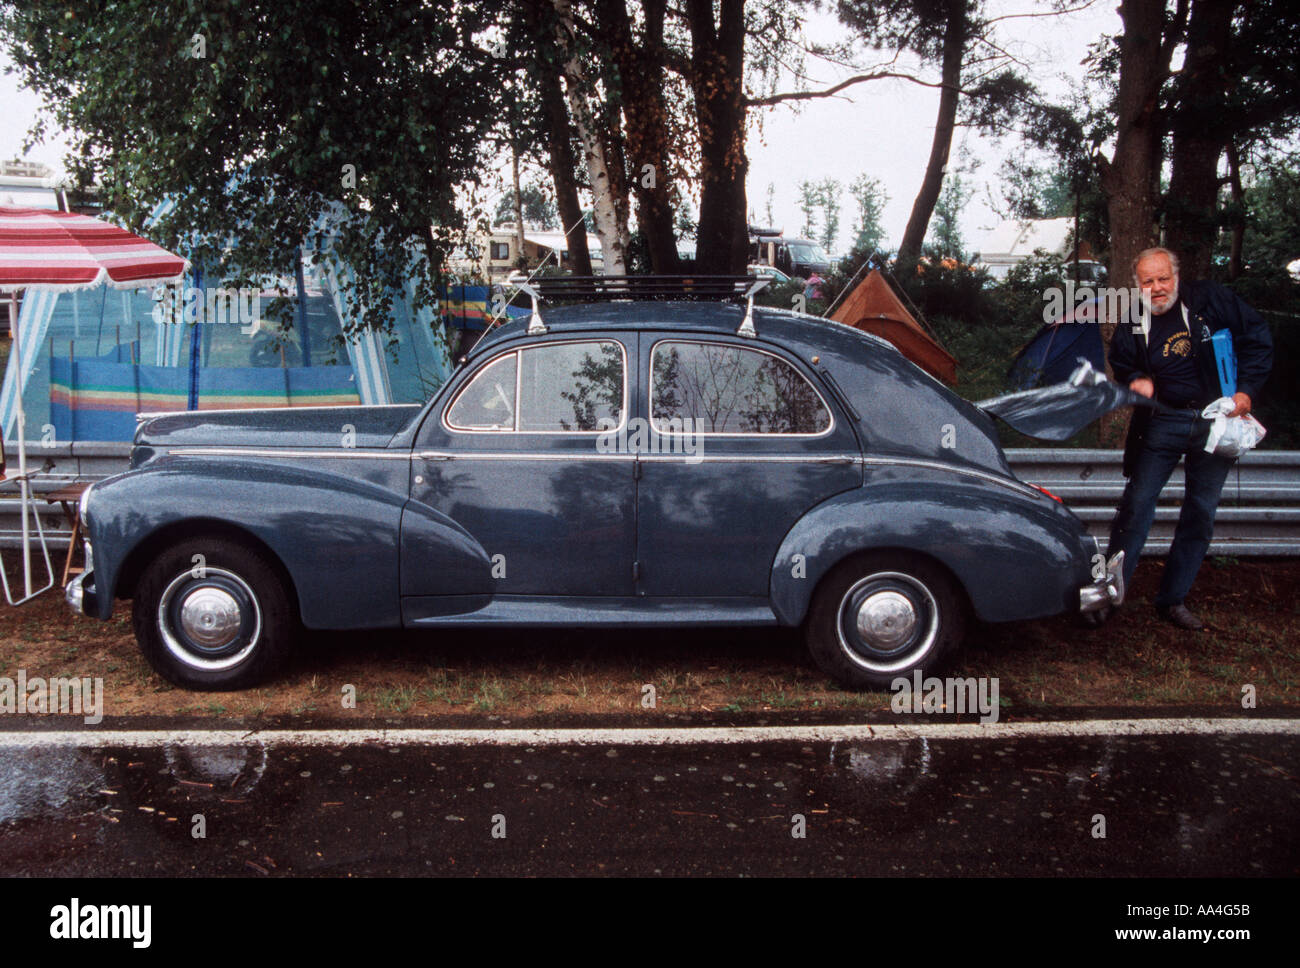 Classic 1950 Peugeot 203 voiture sur un camp français site avec un homme barbu chargement du boot trunk Banque D'Images